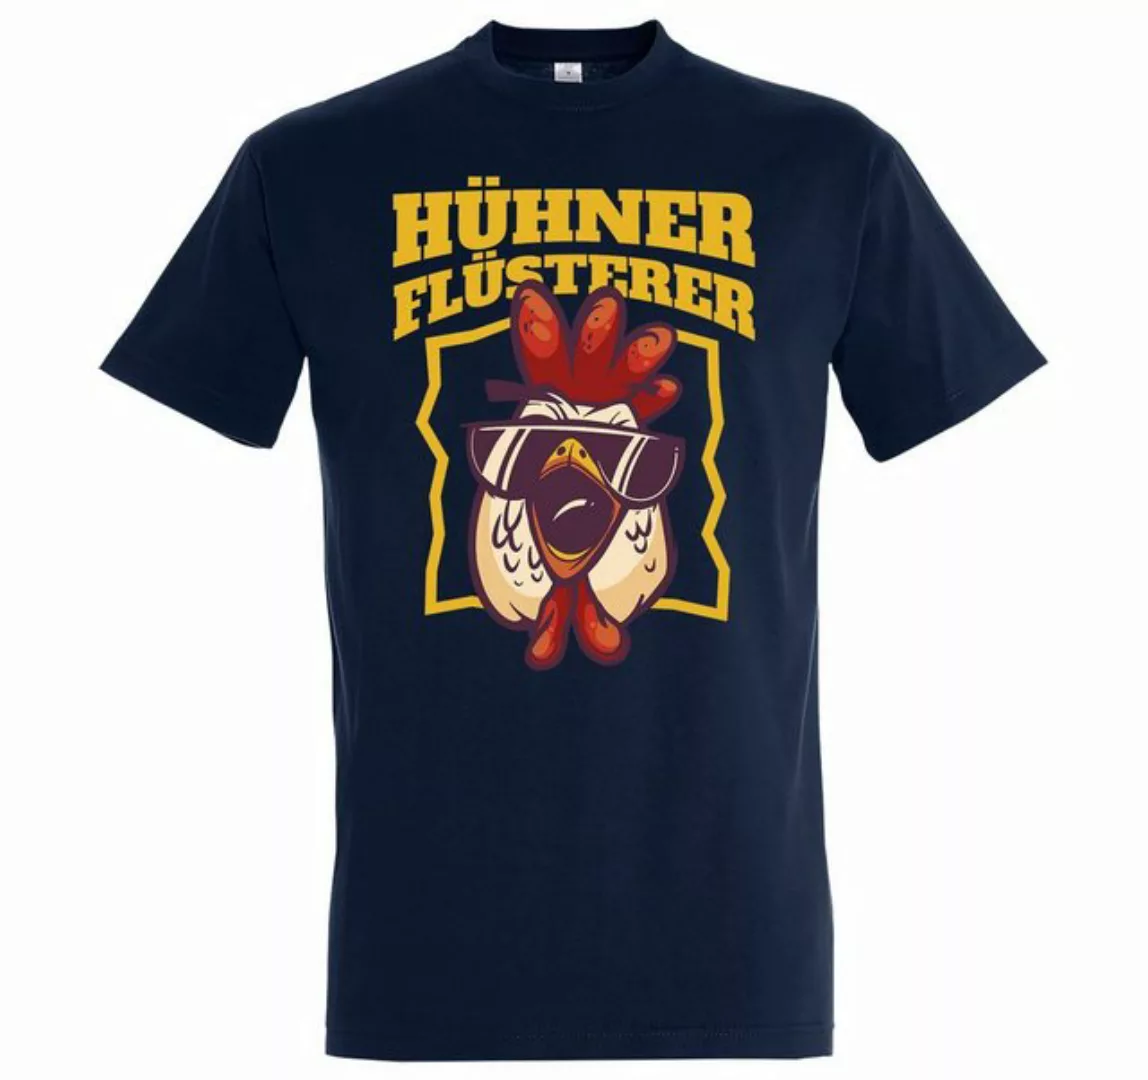 Youth Designz T-Shirt "Hühner Flüsterer" Herren Shirt mit lustigem Frontpri günstig online kaufen